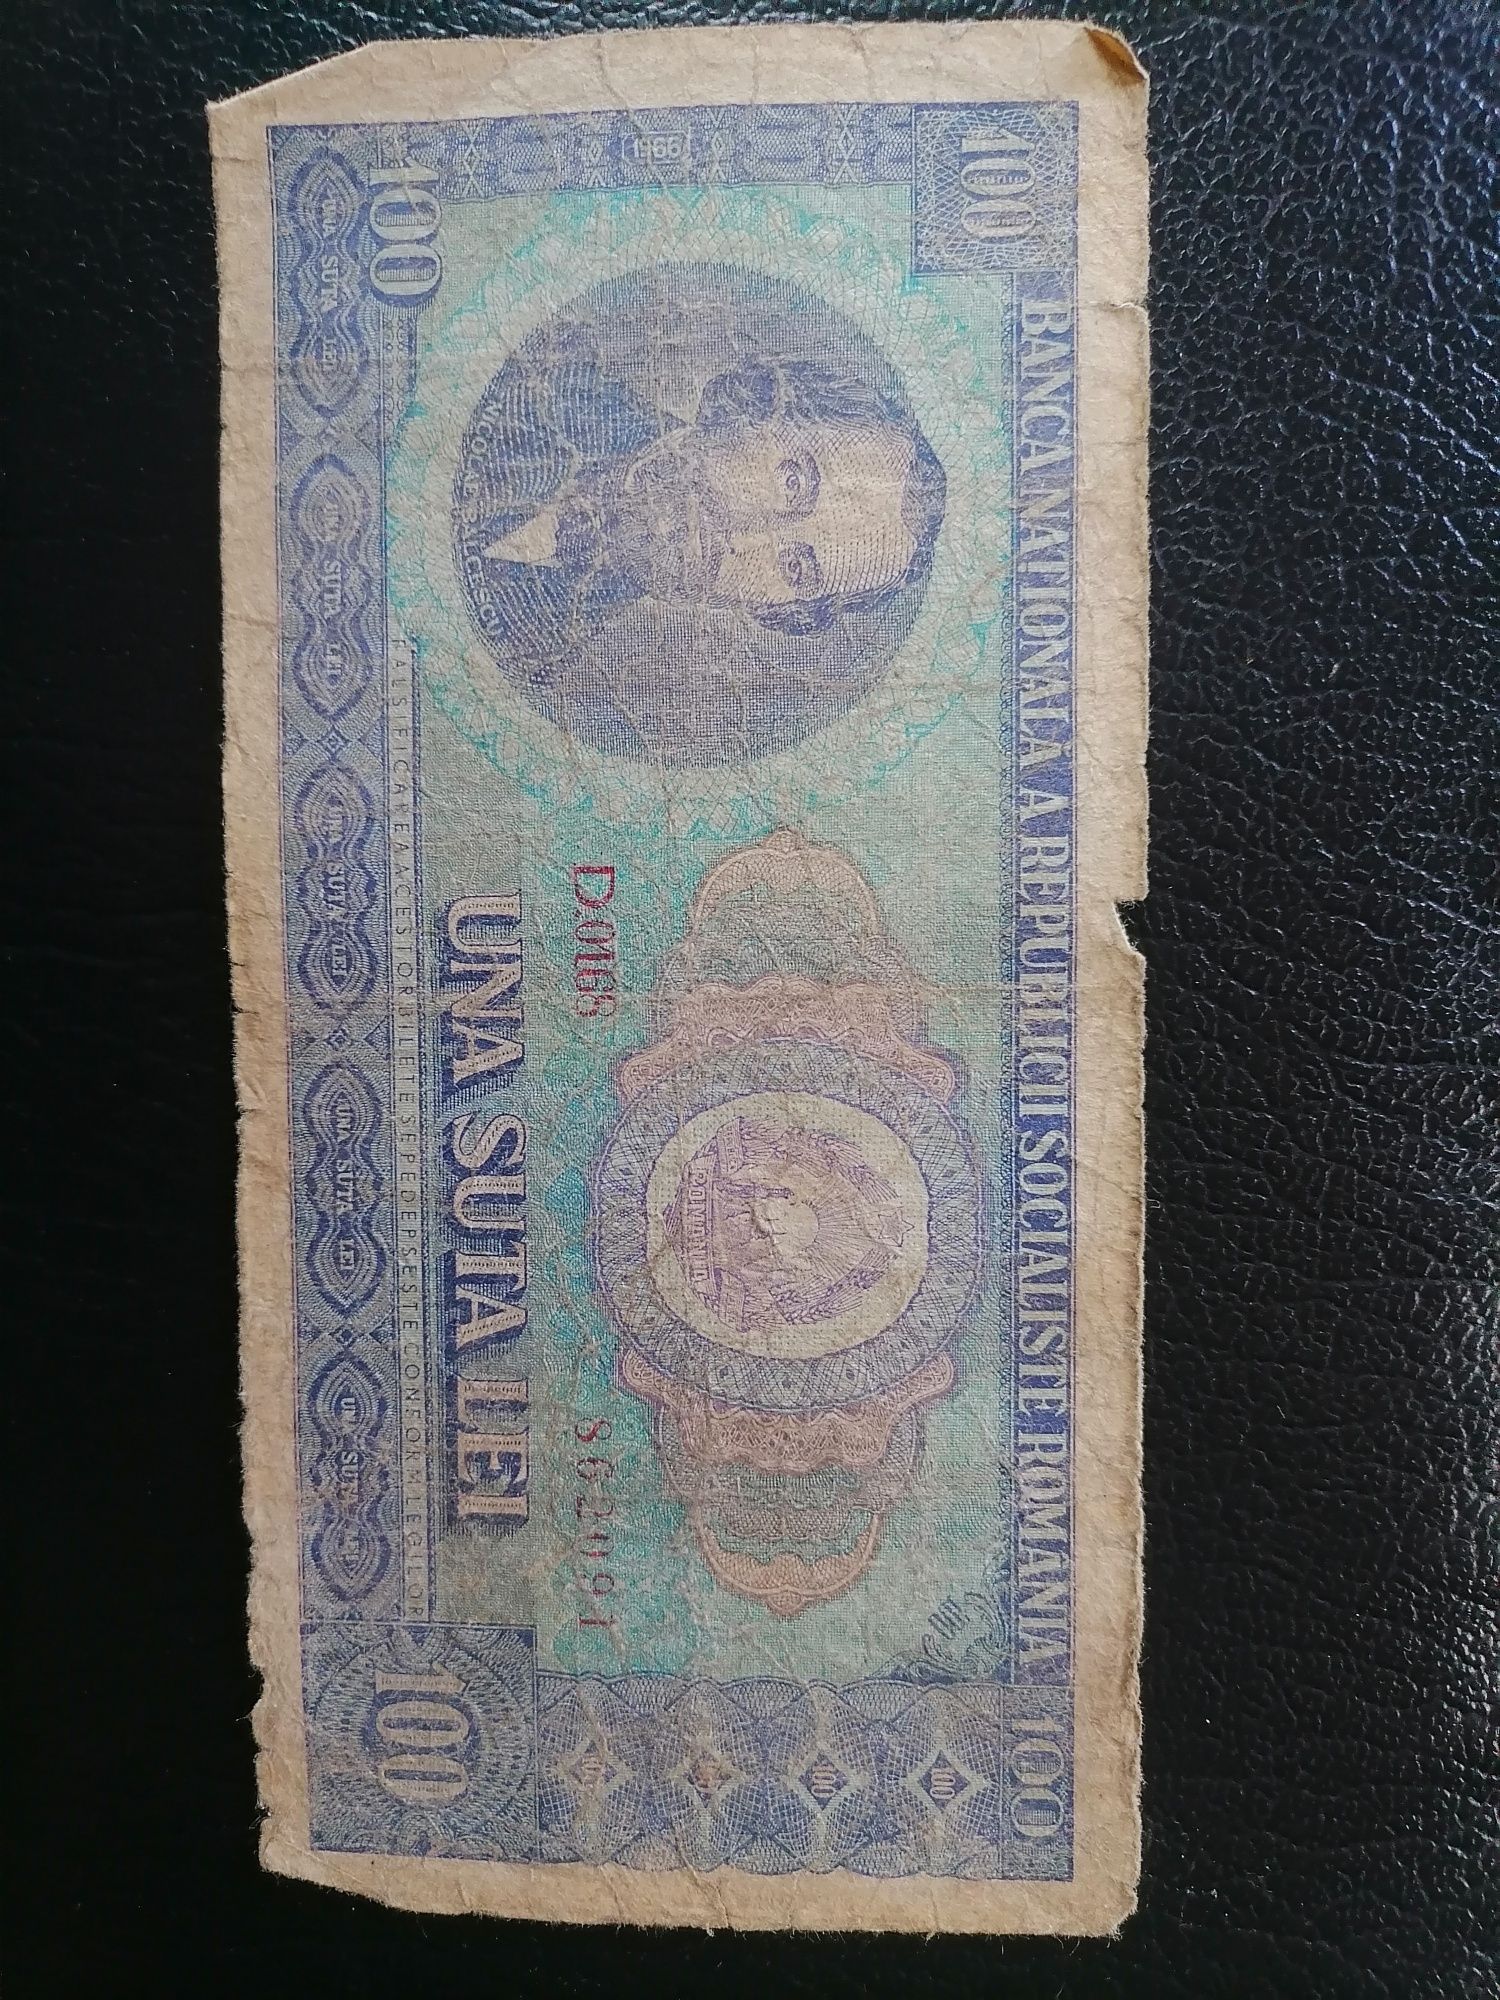 Bncnota 100 lei din 1966 seria D. 0168/862091 cu Nicolae Balcescu.